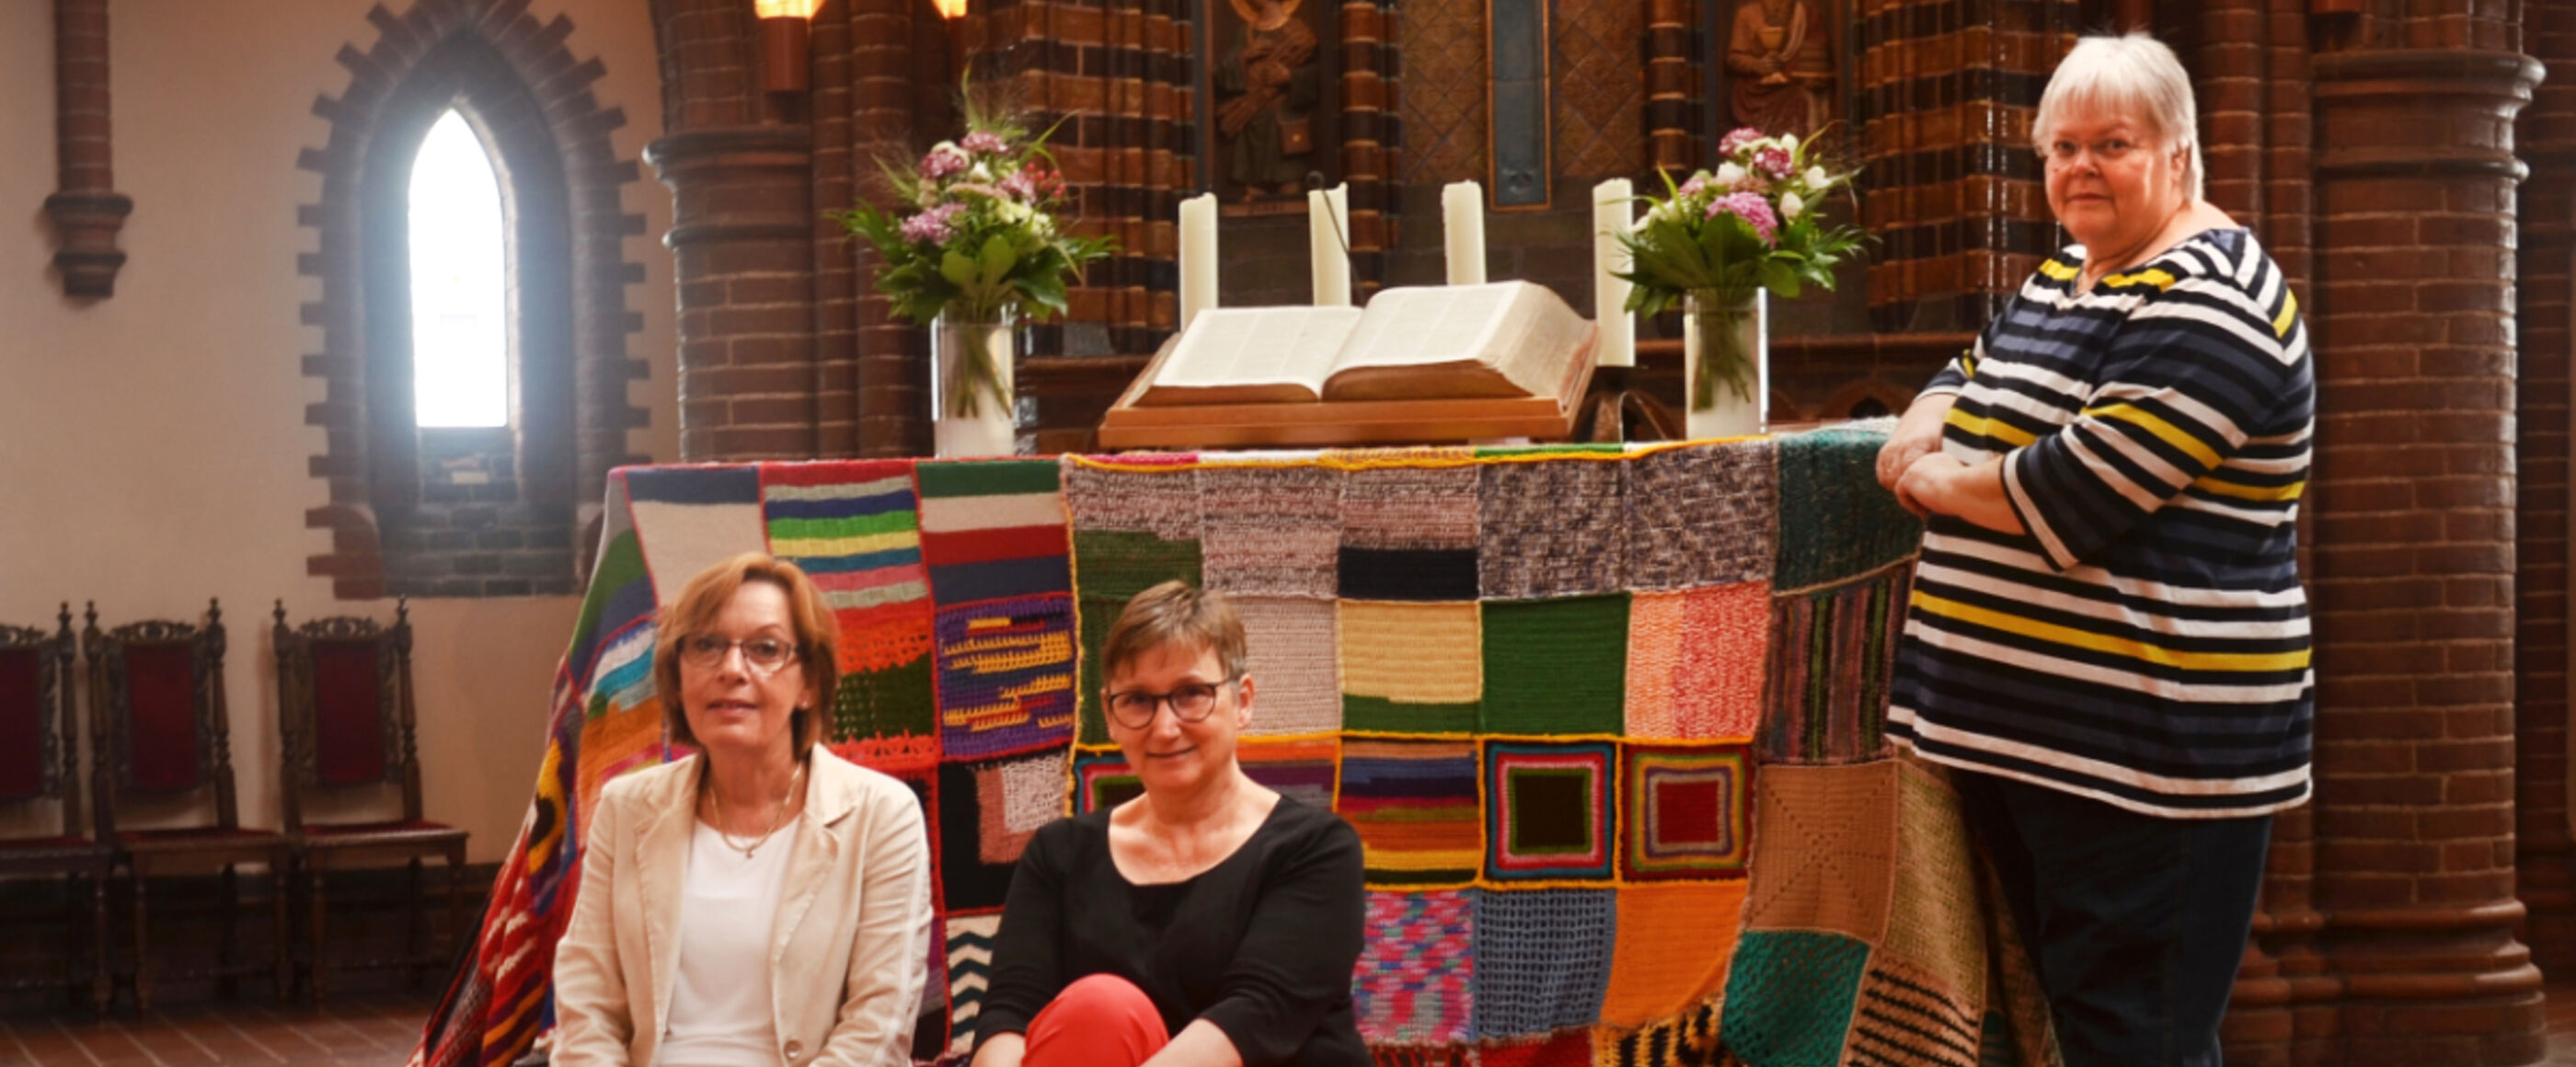 Zwei Frauen sitzen auf einer bunten Decke vor einem Kirchenaltar. Daneben steht eine weitere Frau.